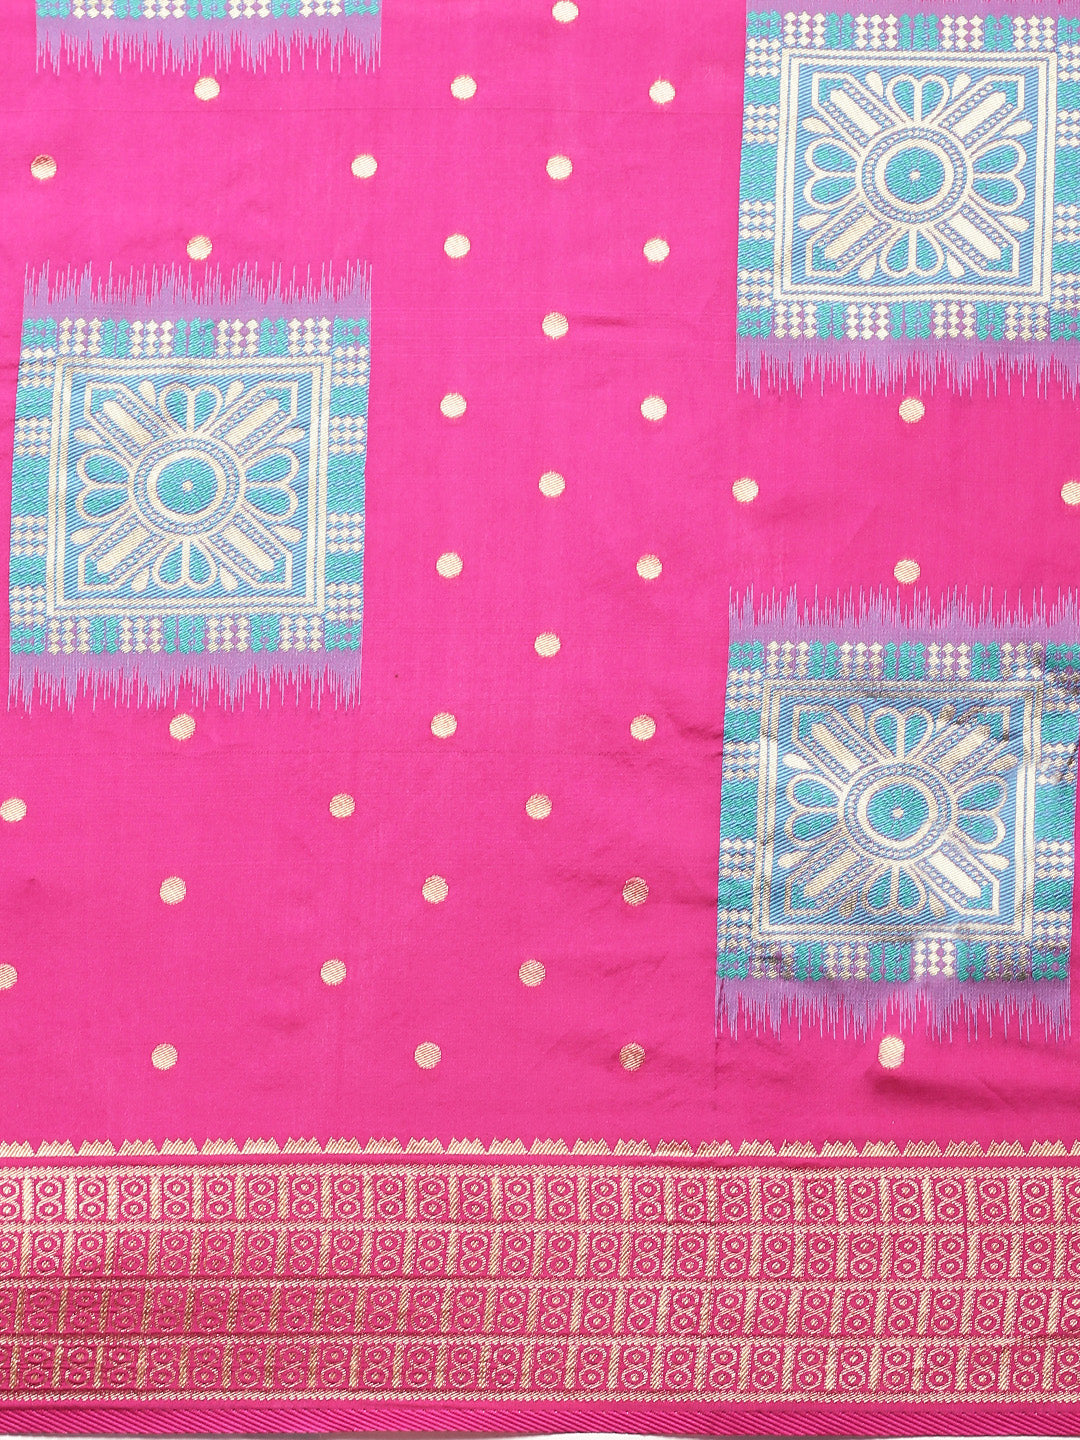 Amazing Pink And Blue Color Banarasi Silk Saree